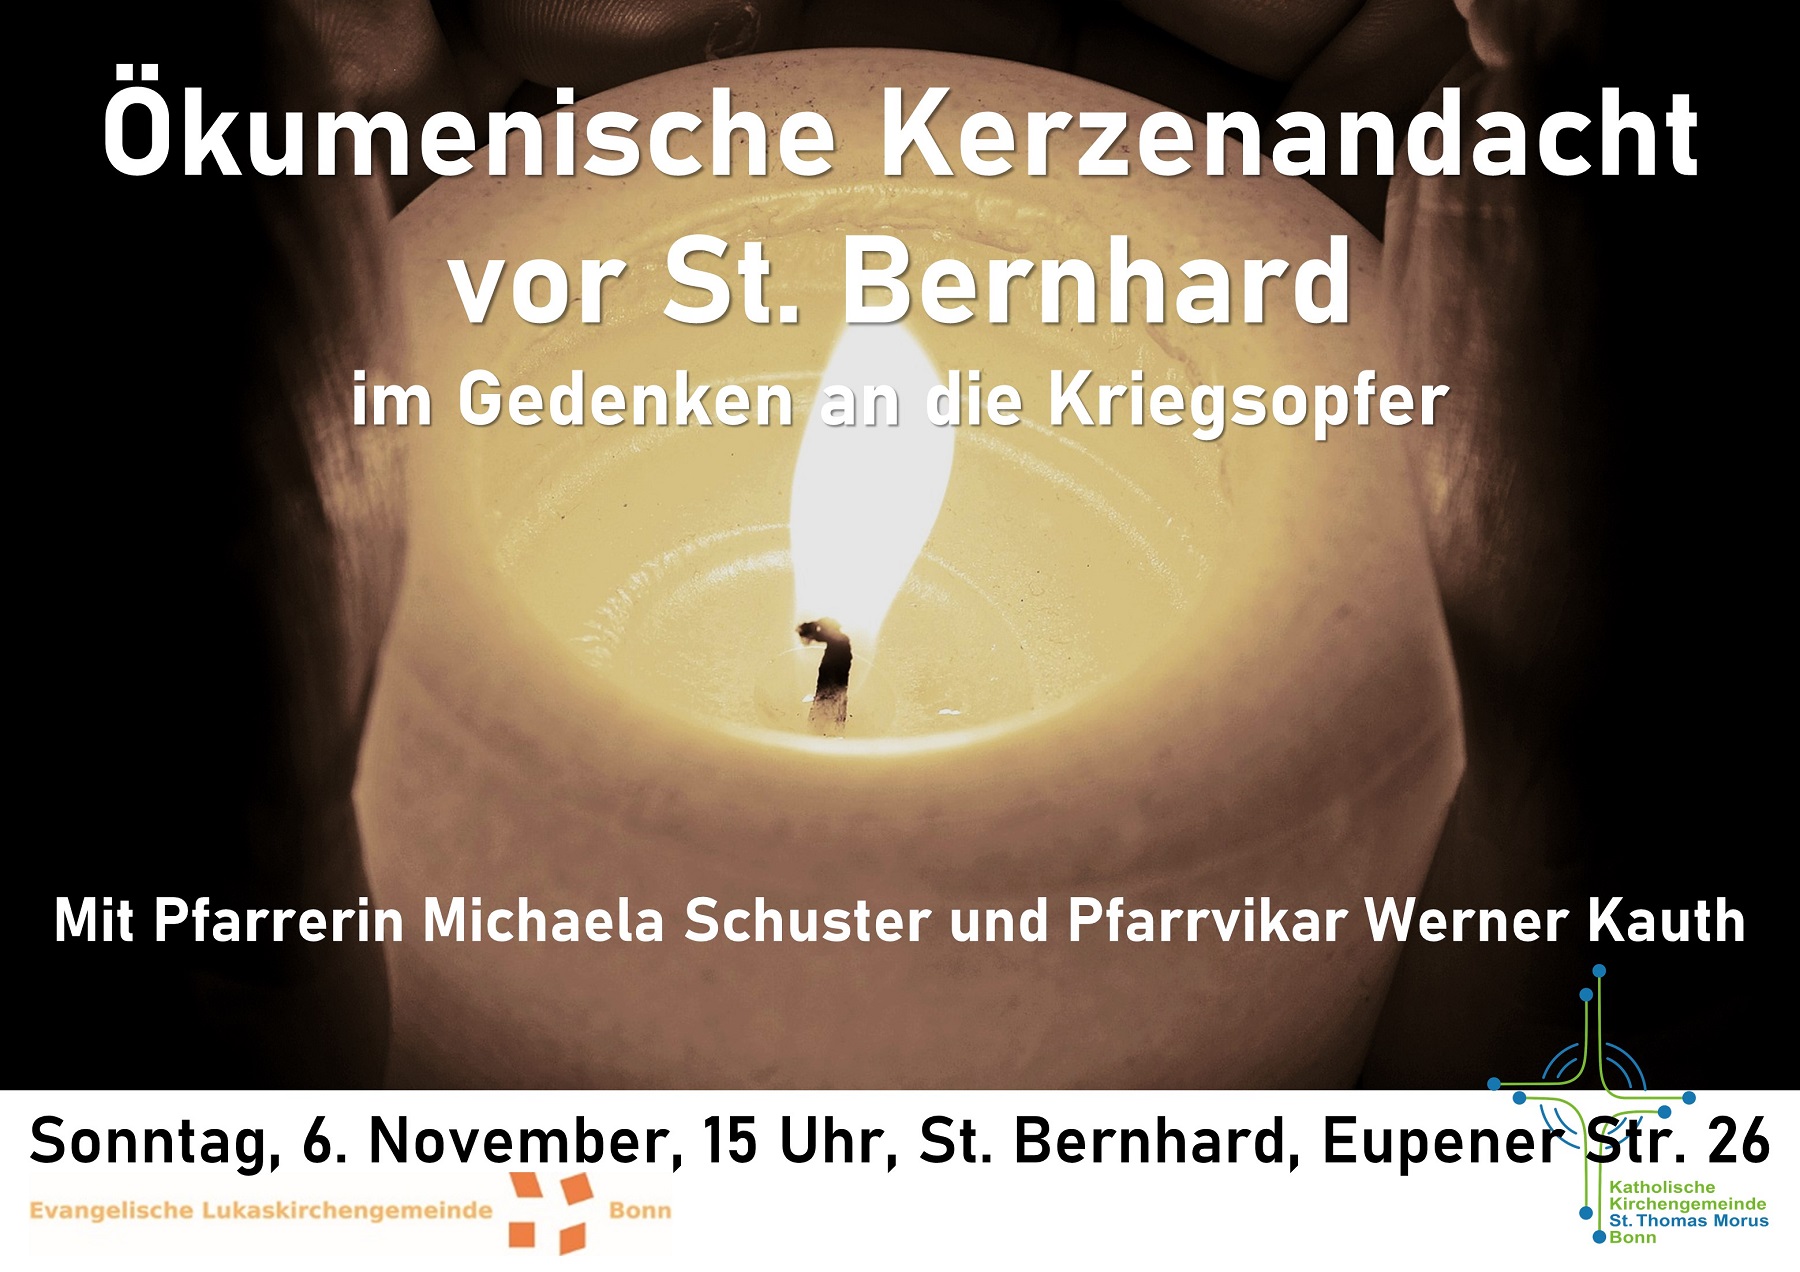 Ökumenische Kerzenandacht im Gedenken an die Kriegsopfer am Sonntag, 06. November 2022, um 15 Uhr an der Bernhardkirche in Bonn Auerberg, Eupener Str. 26.